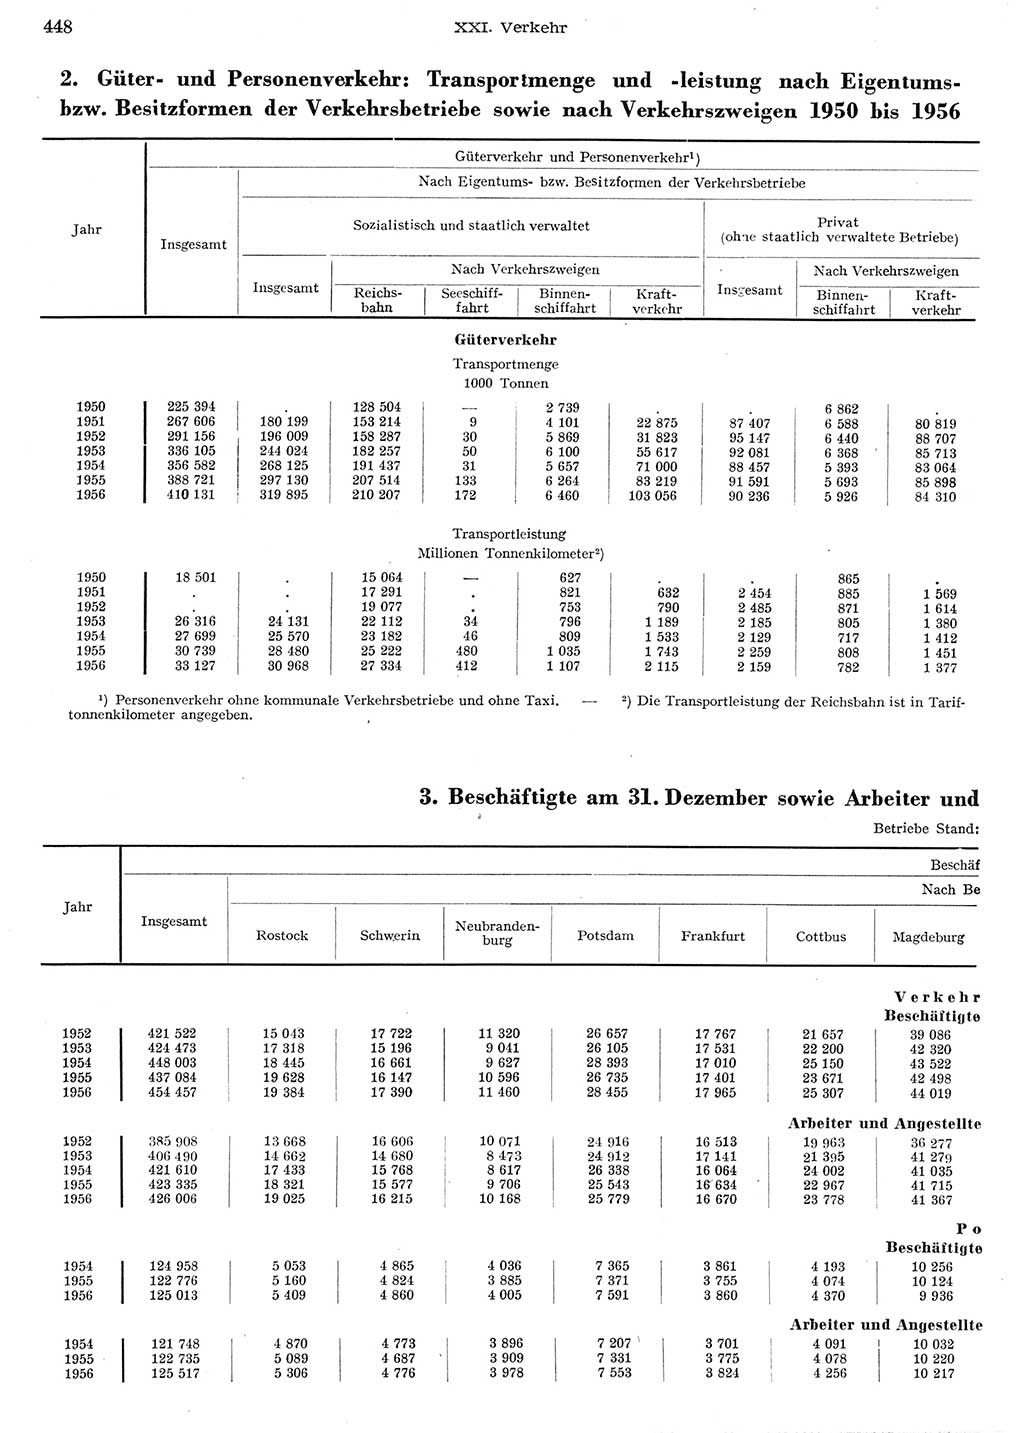 Statistisches Jahrbuch der Deutschen Demokratischen Republik (DDR) 1956, Seite 448 (Stat. Jb. DDR 1956, S. 448)